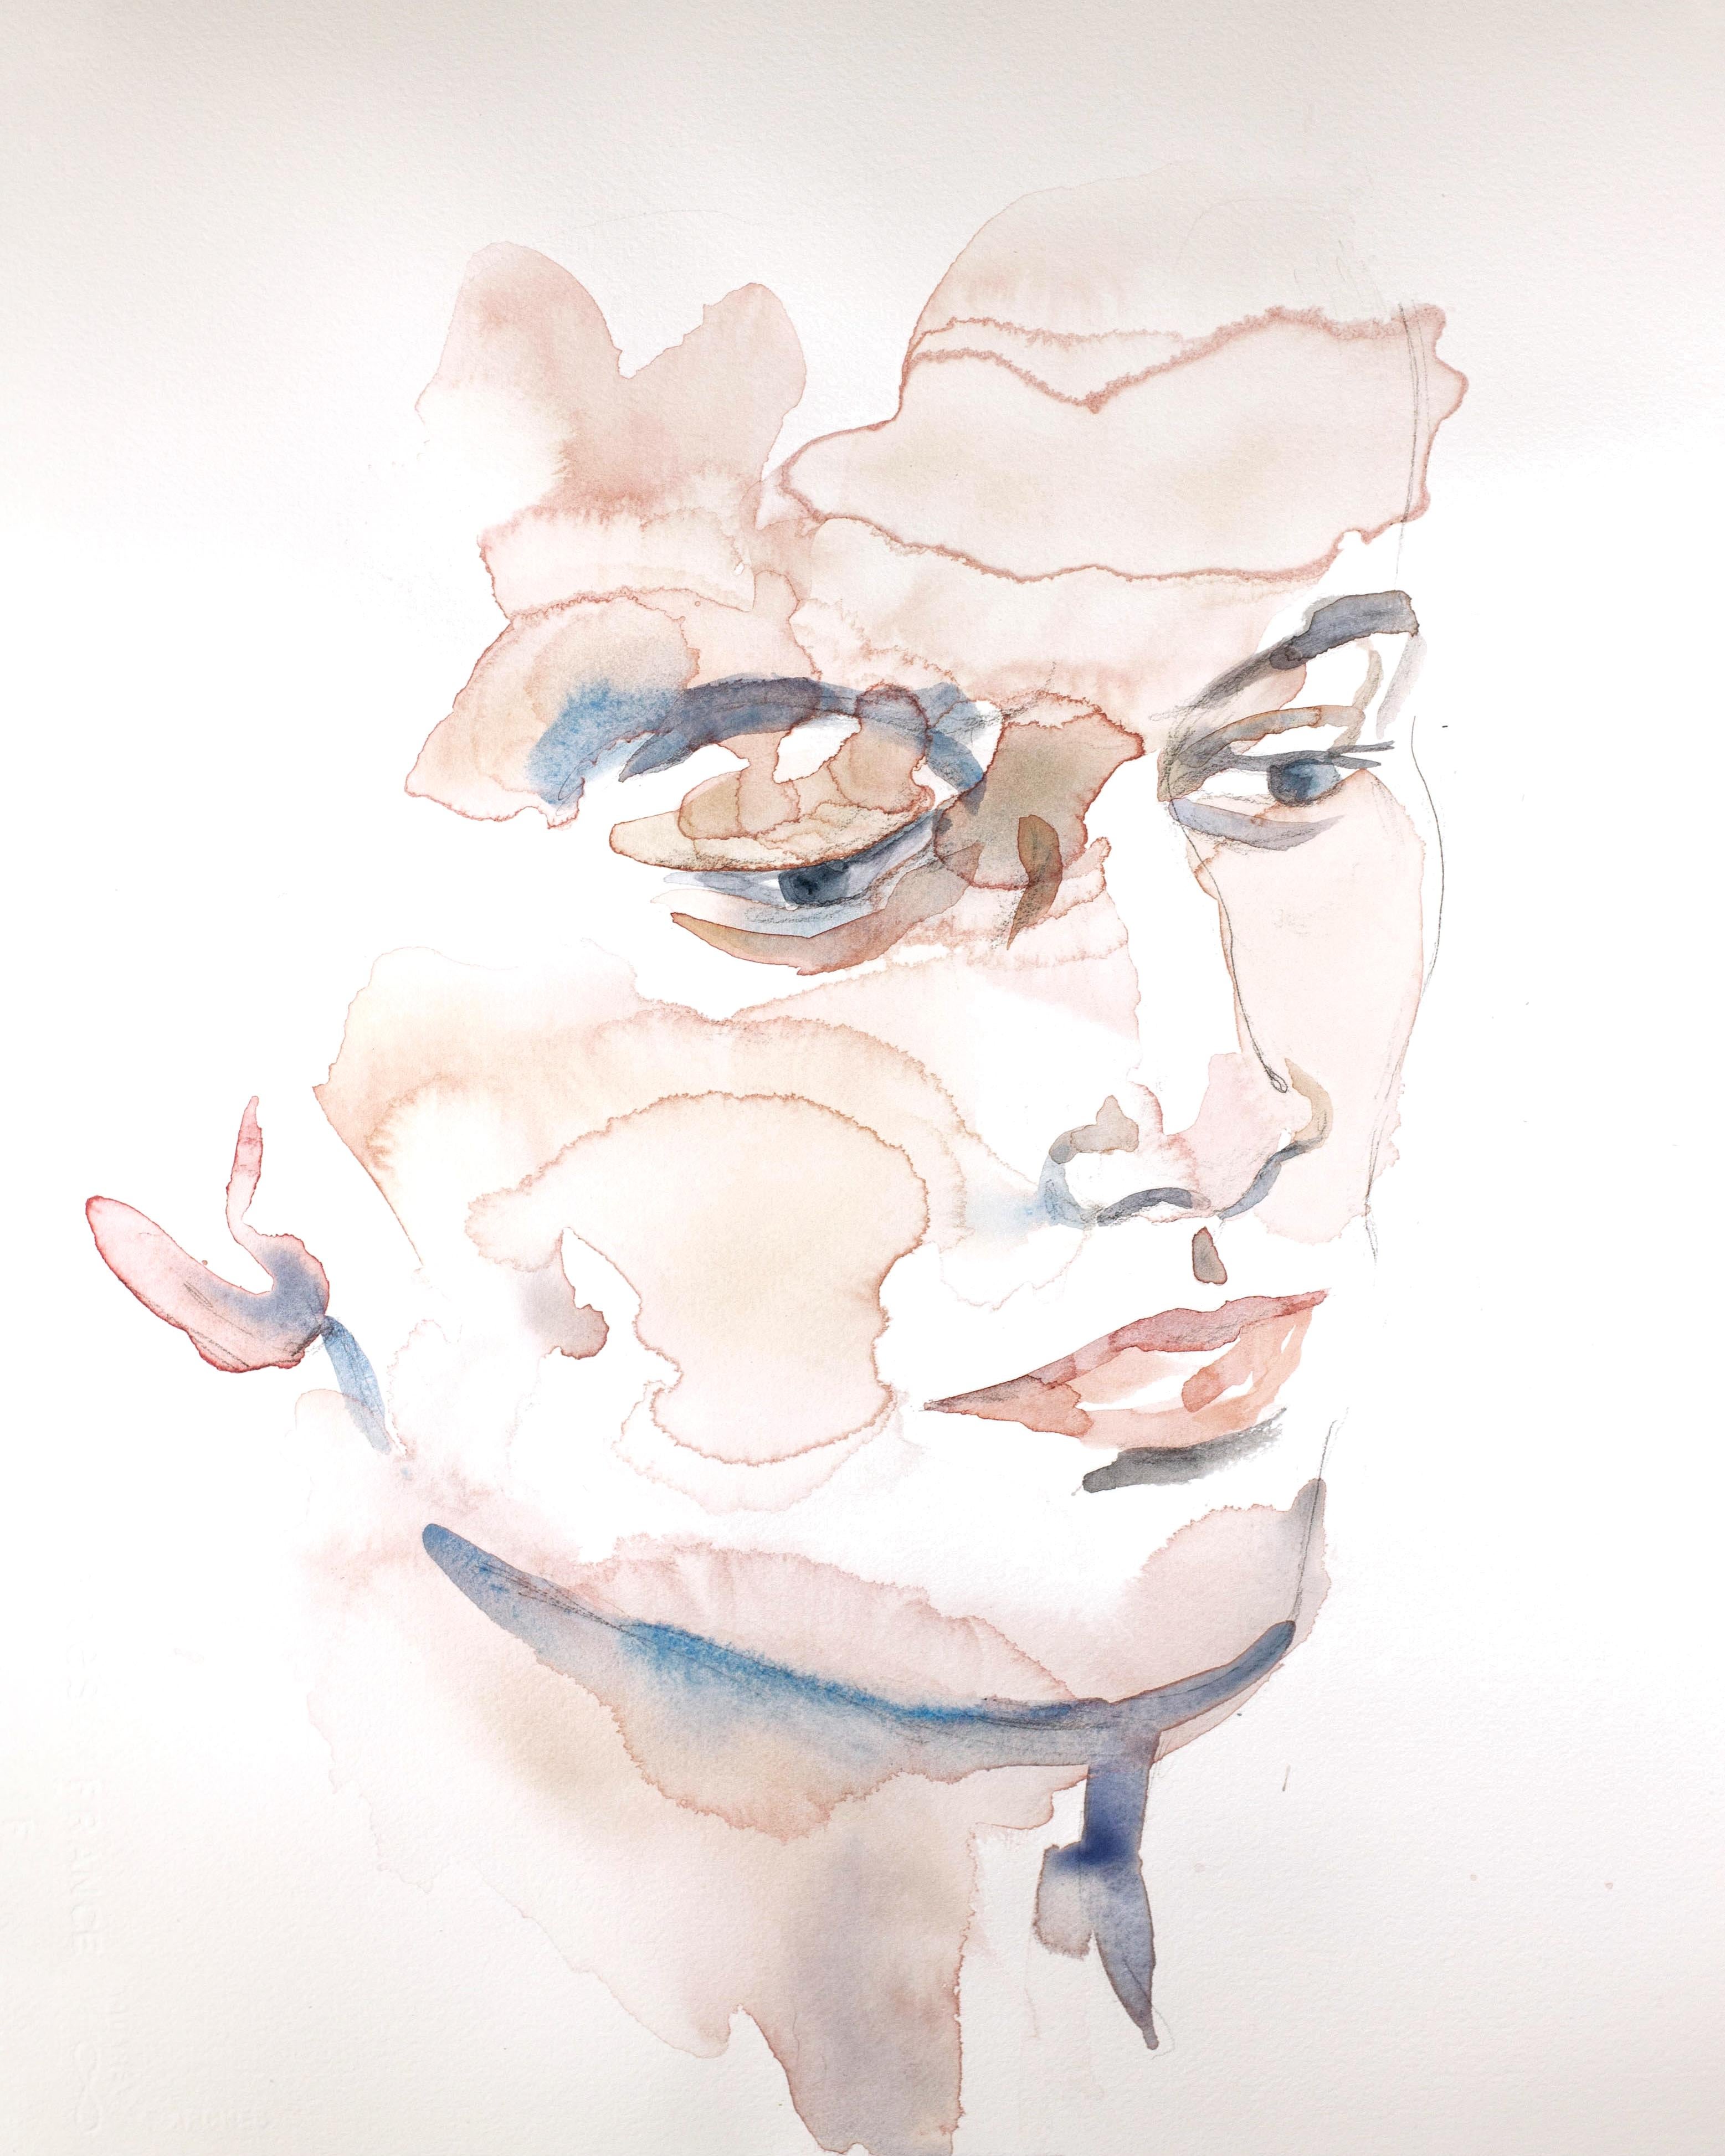 Never No. 4, Original Contemporary Figurative Watercolor Portrait on Paper